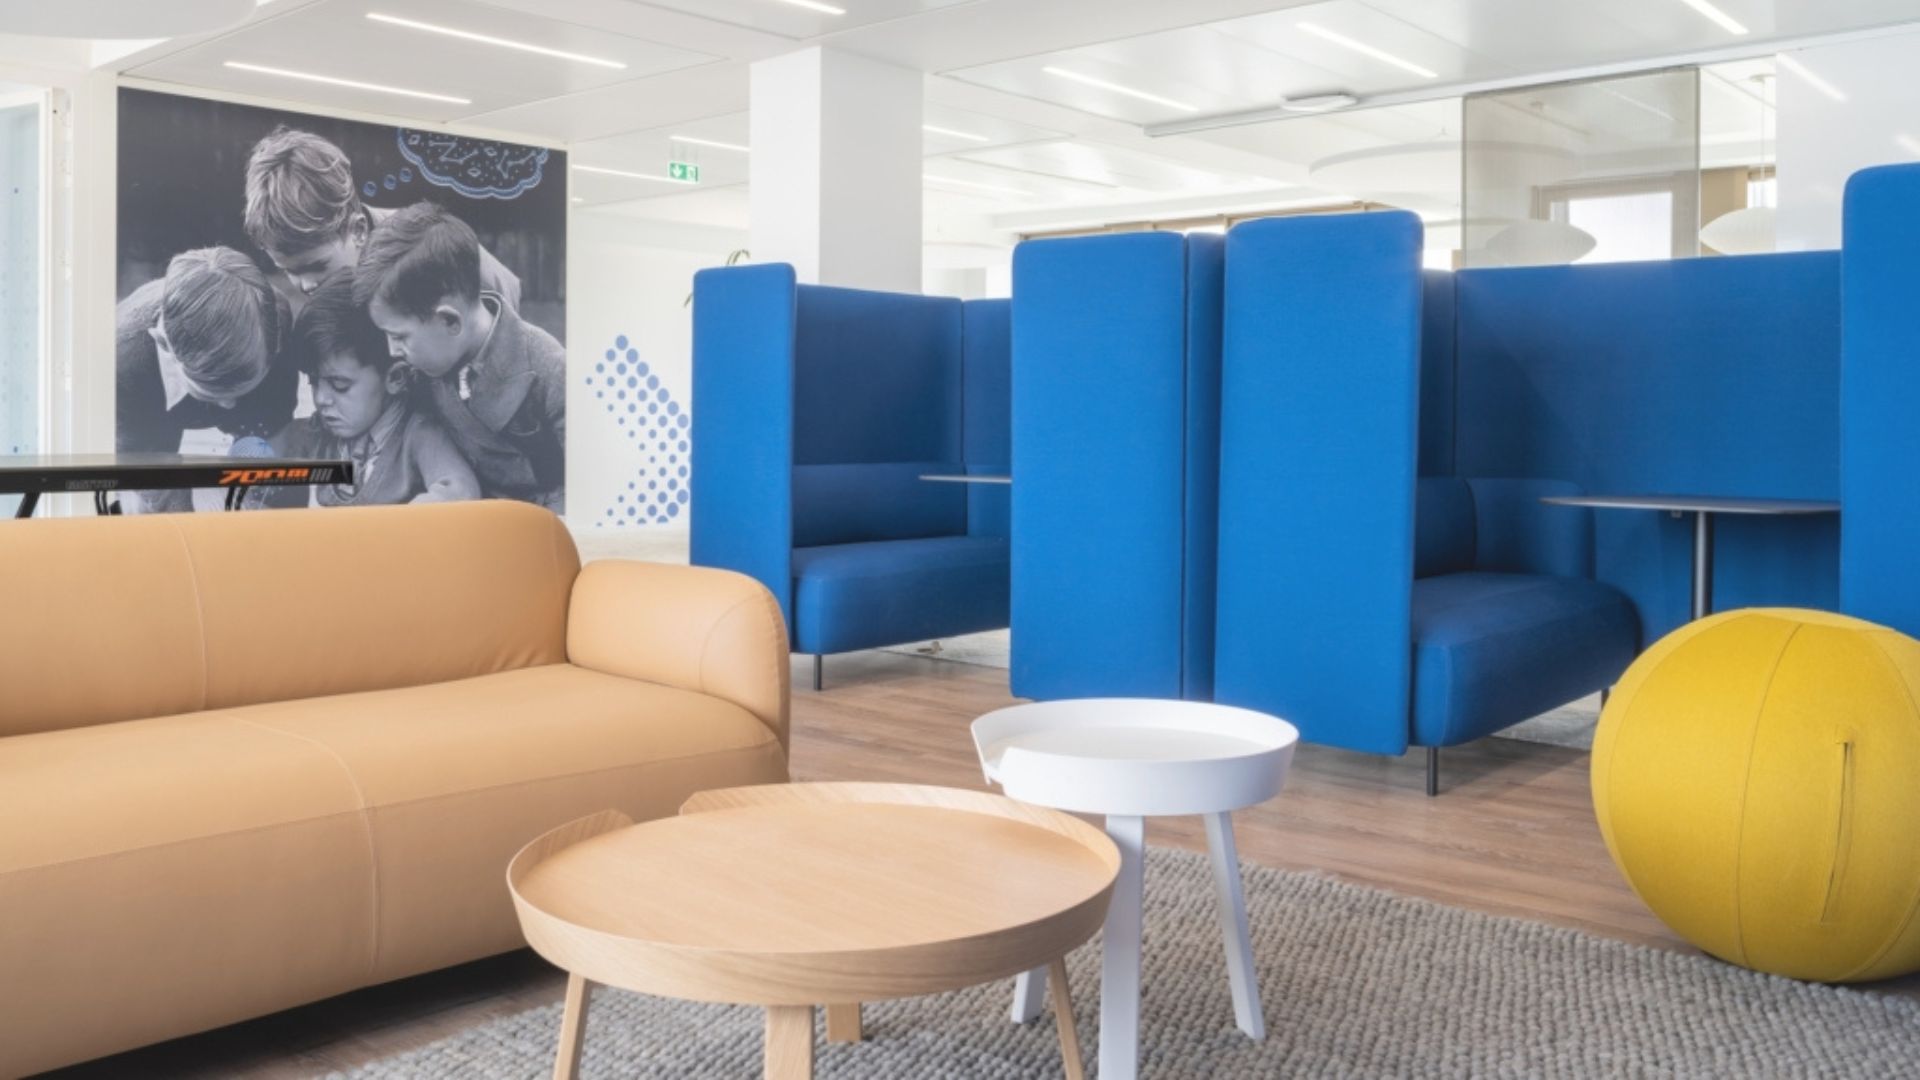 Màu xanh dương mang đến sự yên bình trong công việc | Dự án Văn phòng Unowhy tại Paris - Nguồn: Office snapshots. 